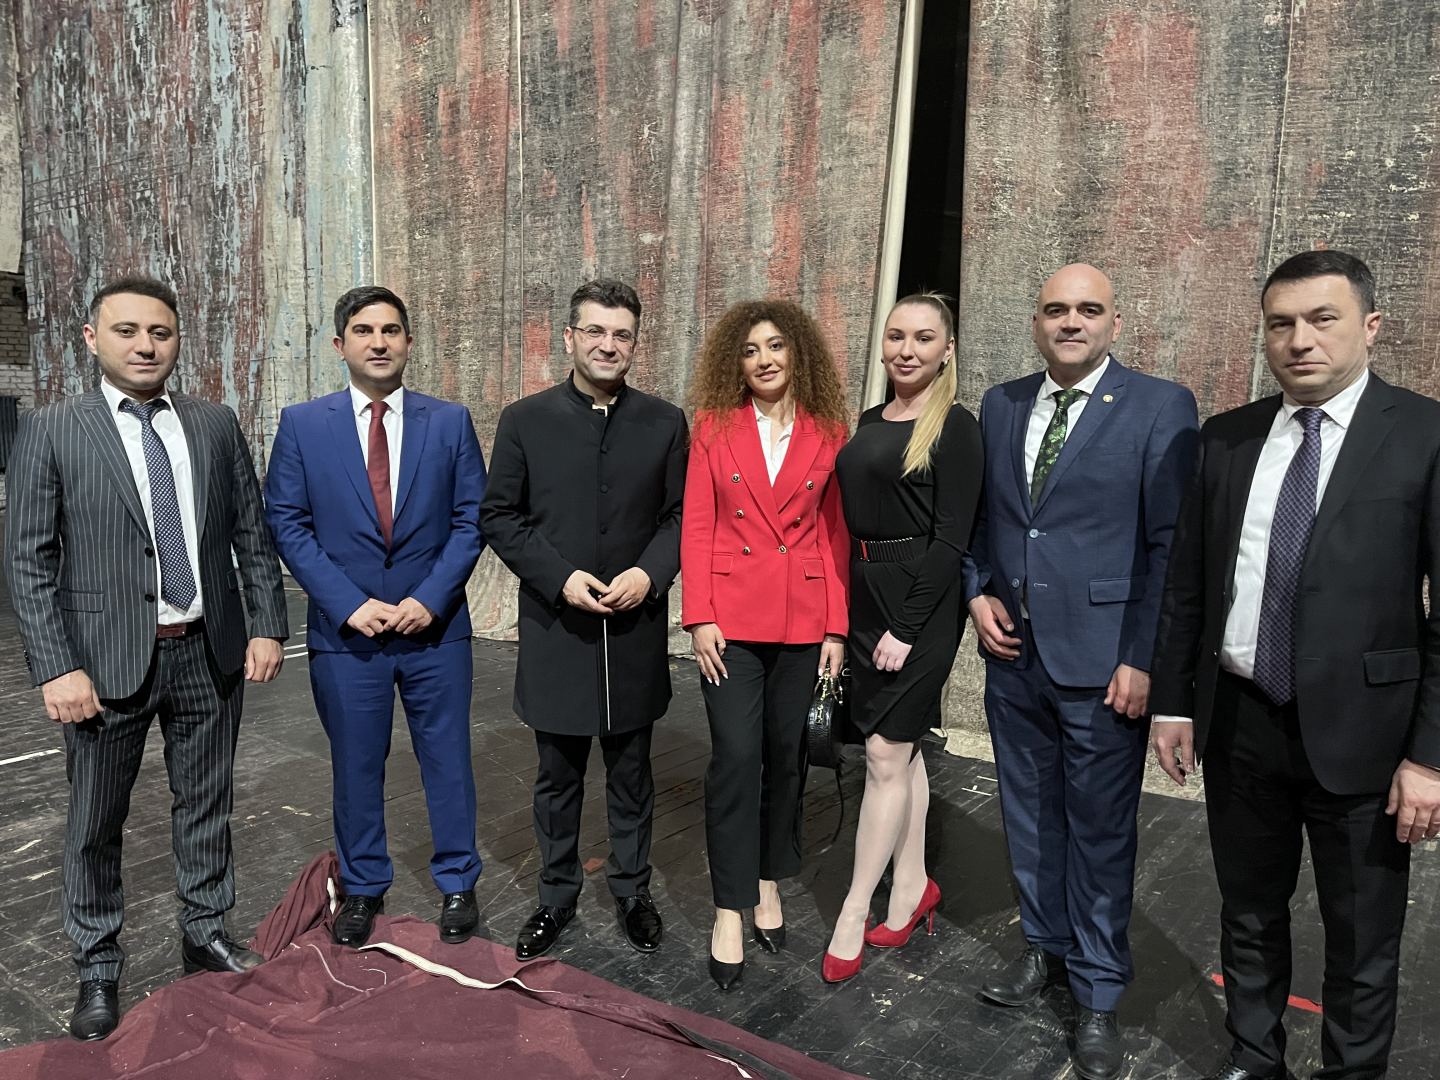 Впервые в истории театра Бухареста представлен спектакль под управлением азербайджанского дирижера (ФОТО)